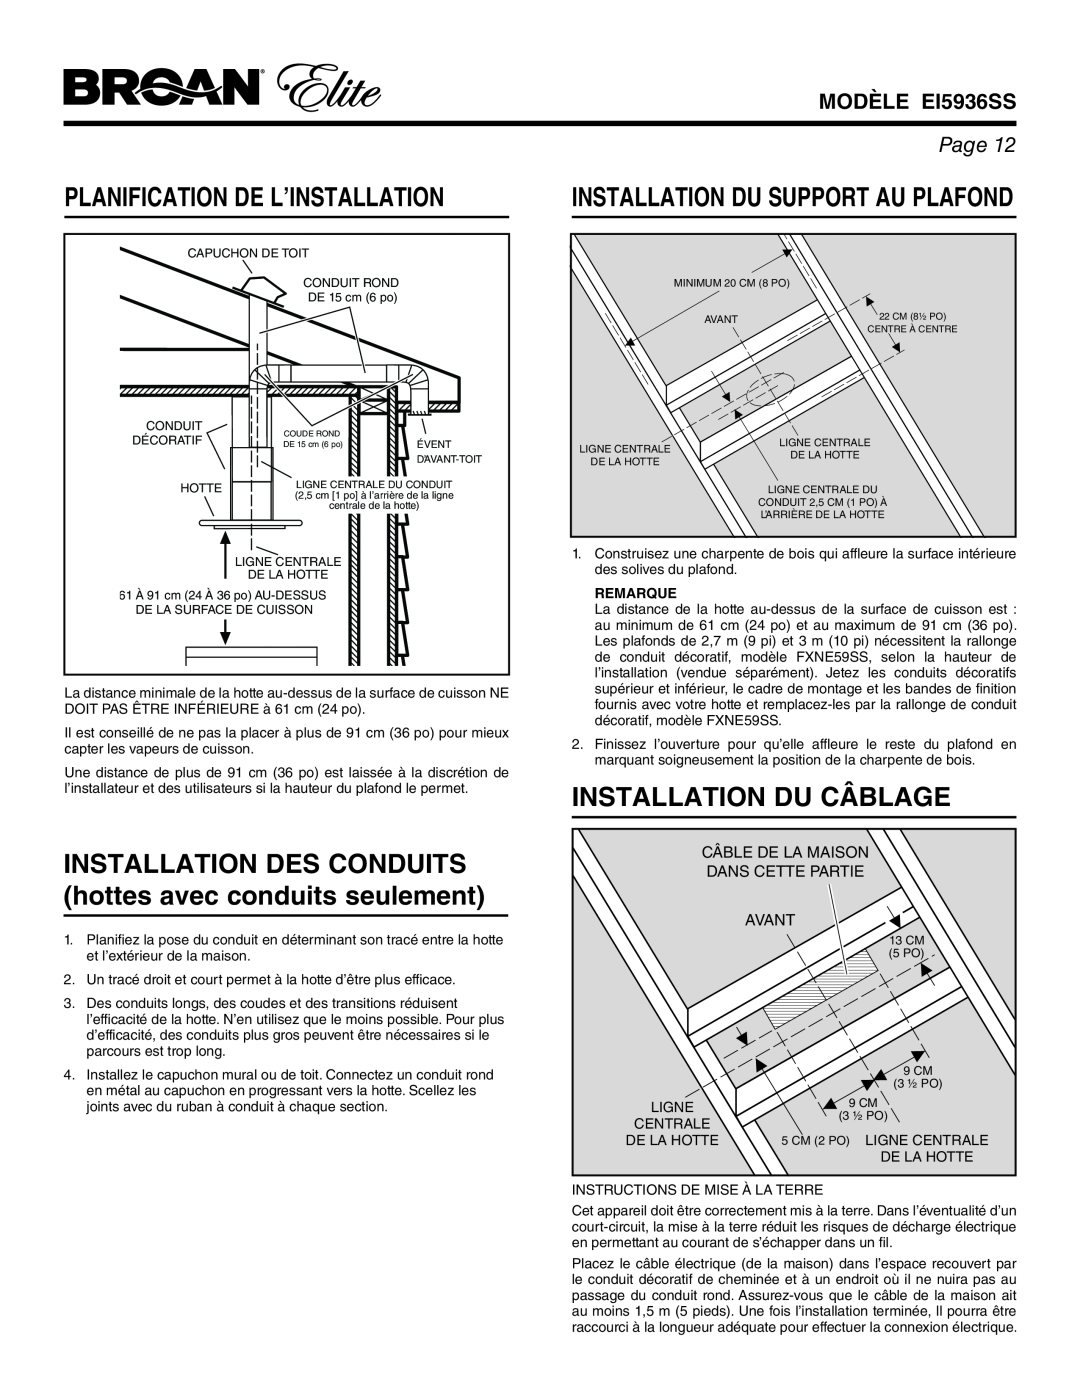 Broan Planification De L’Installation, INSTALLATION DES CONDUITS hottes avec conduits seulement, MODÈLE EI5936SS, Page 